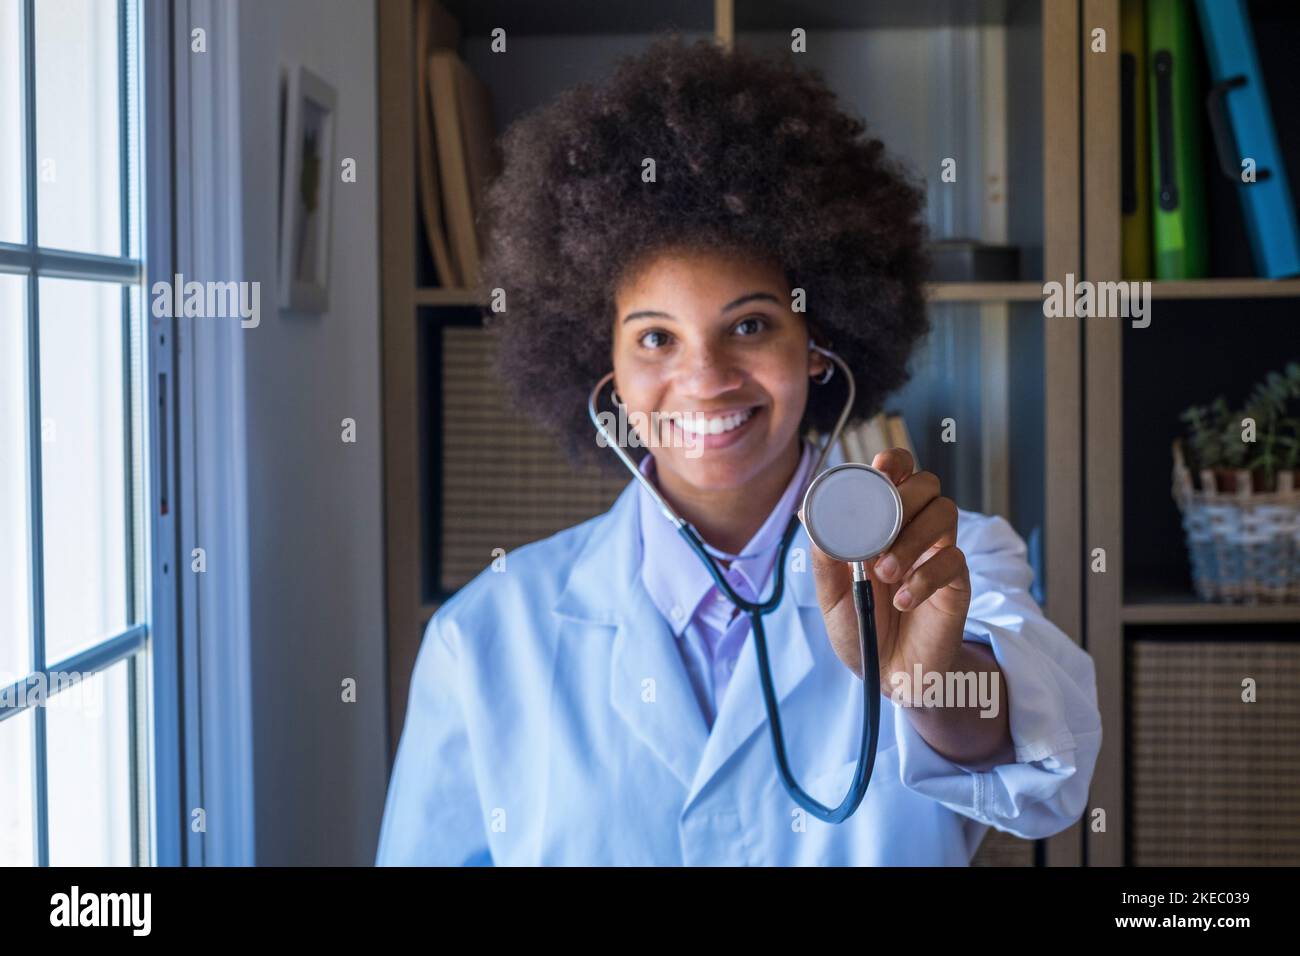 Portrait d'une femme afro-américaine souriante en uniforme montrant un stéthoscope pour vérifier le rythme cardiaque. Un professionnel de la santé montrant l'équipement médical de l'outil d'examen à la caméra Banque D'Images